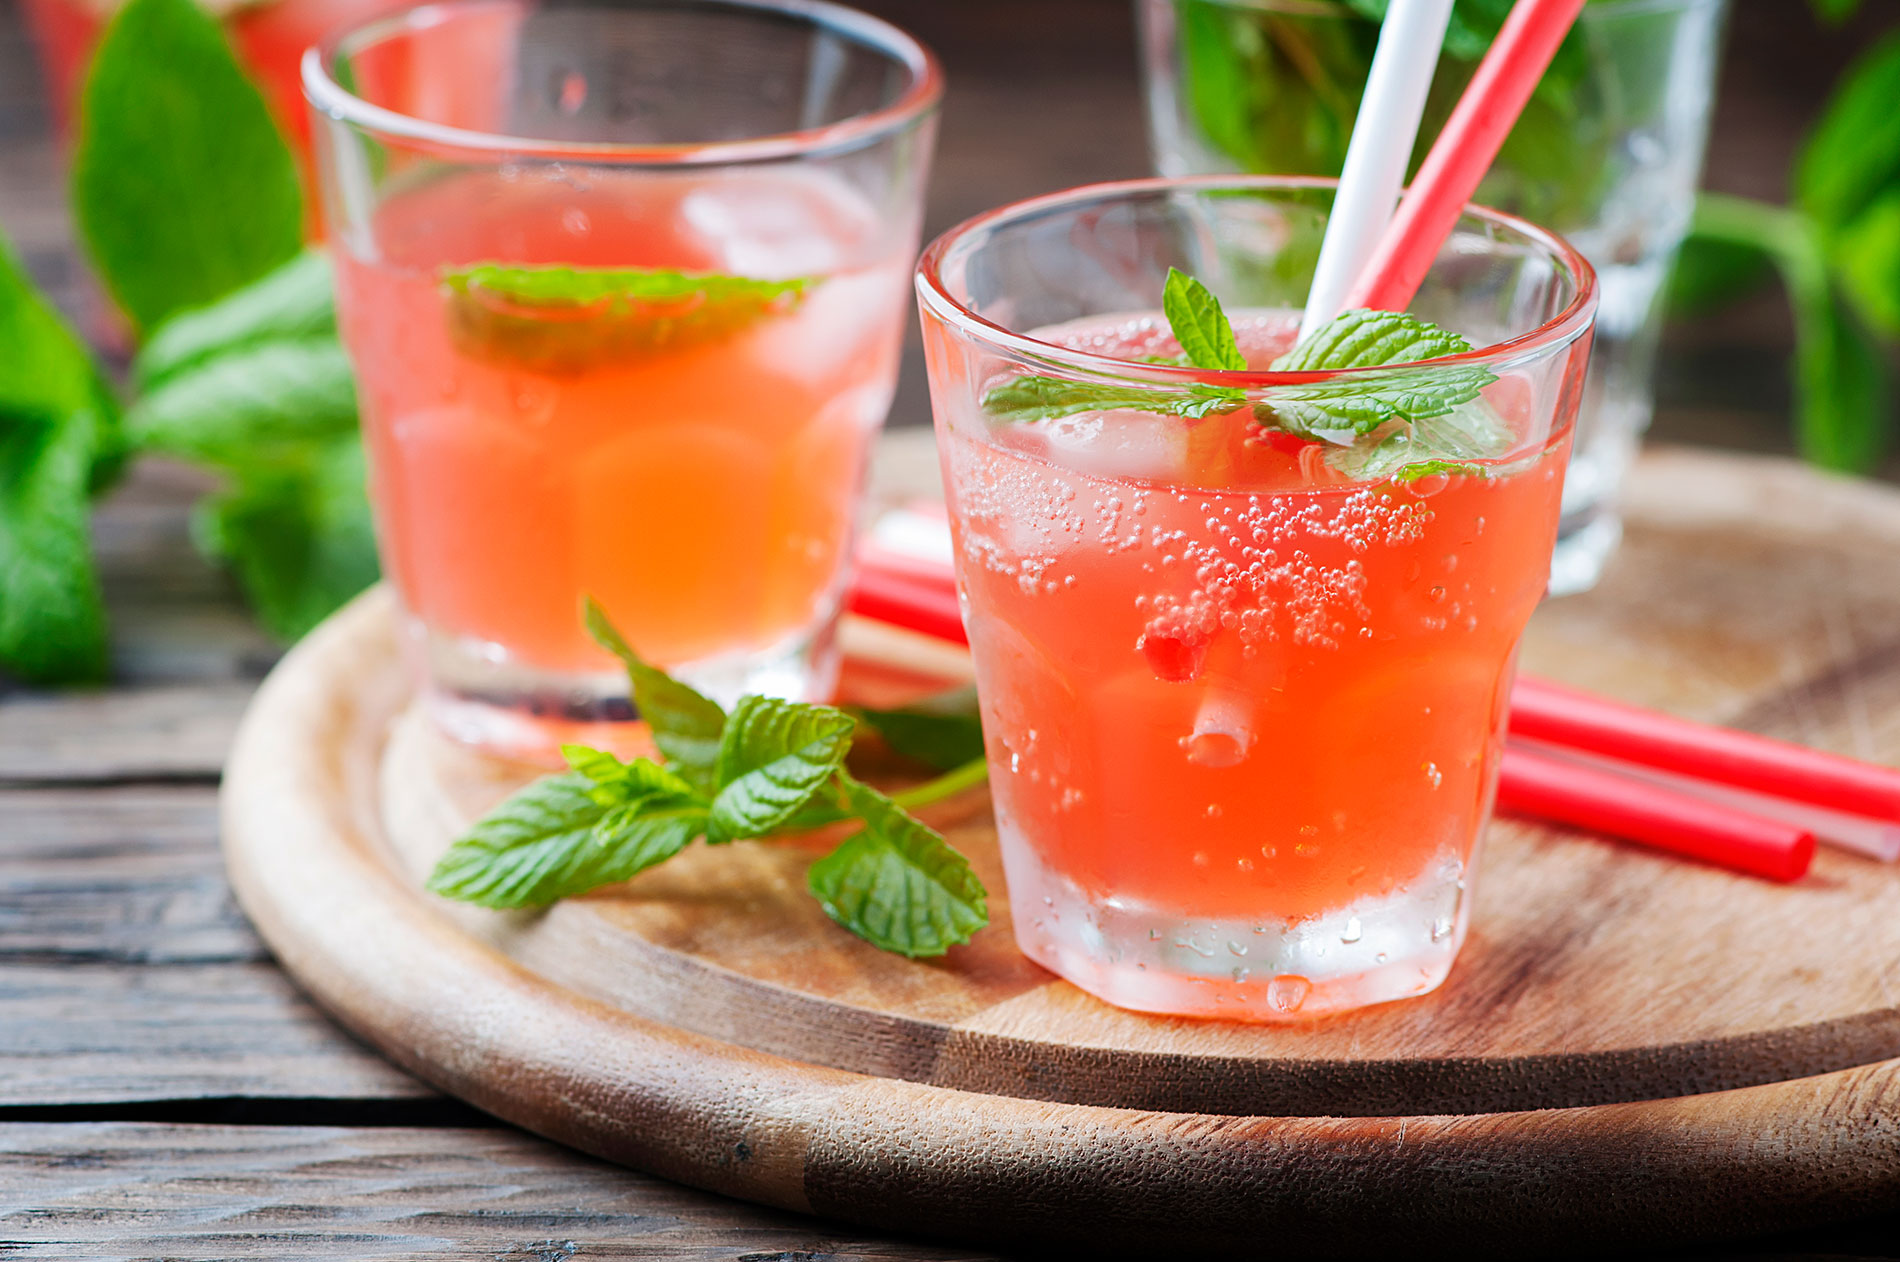 Fruchtiger Cocktail mit Rum und Minze: Machen Mixgetränke schneller betrunken? Alkoholmythen im Faktencheck.